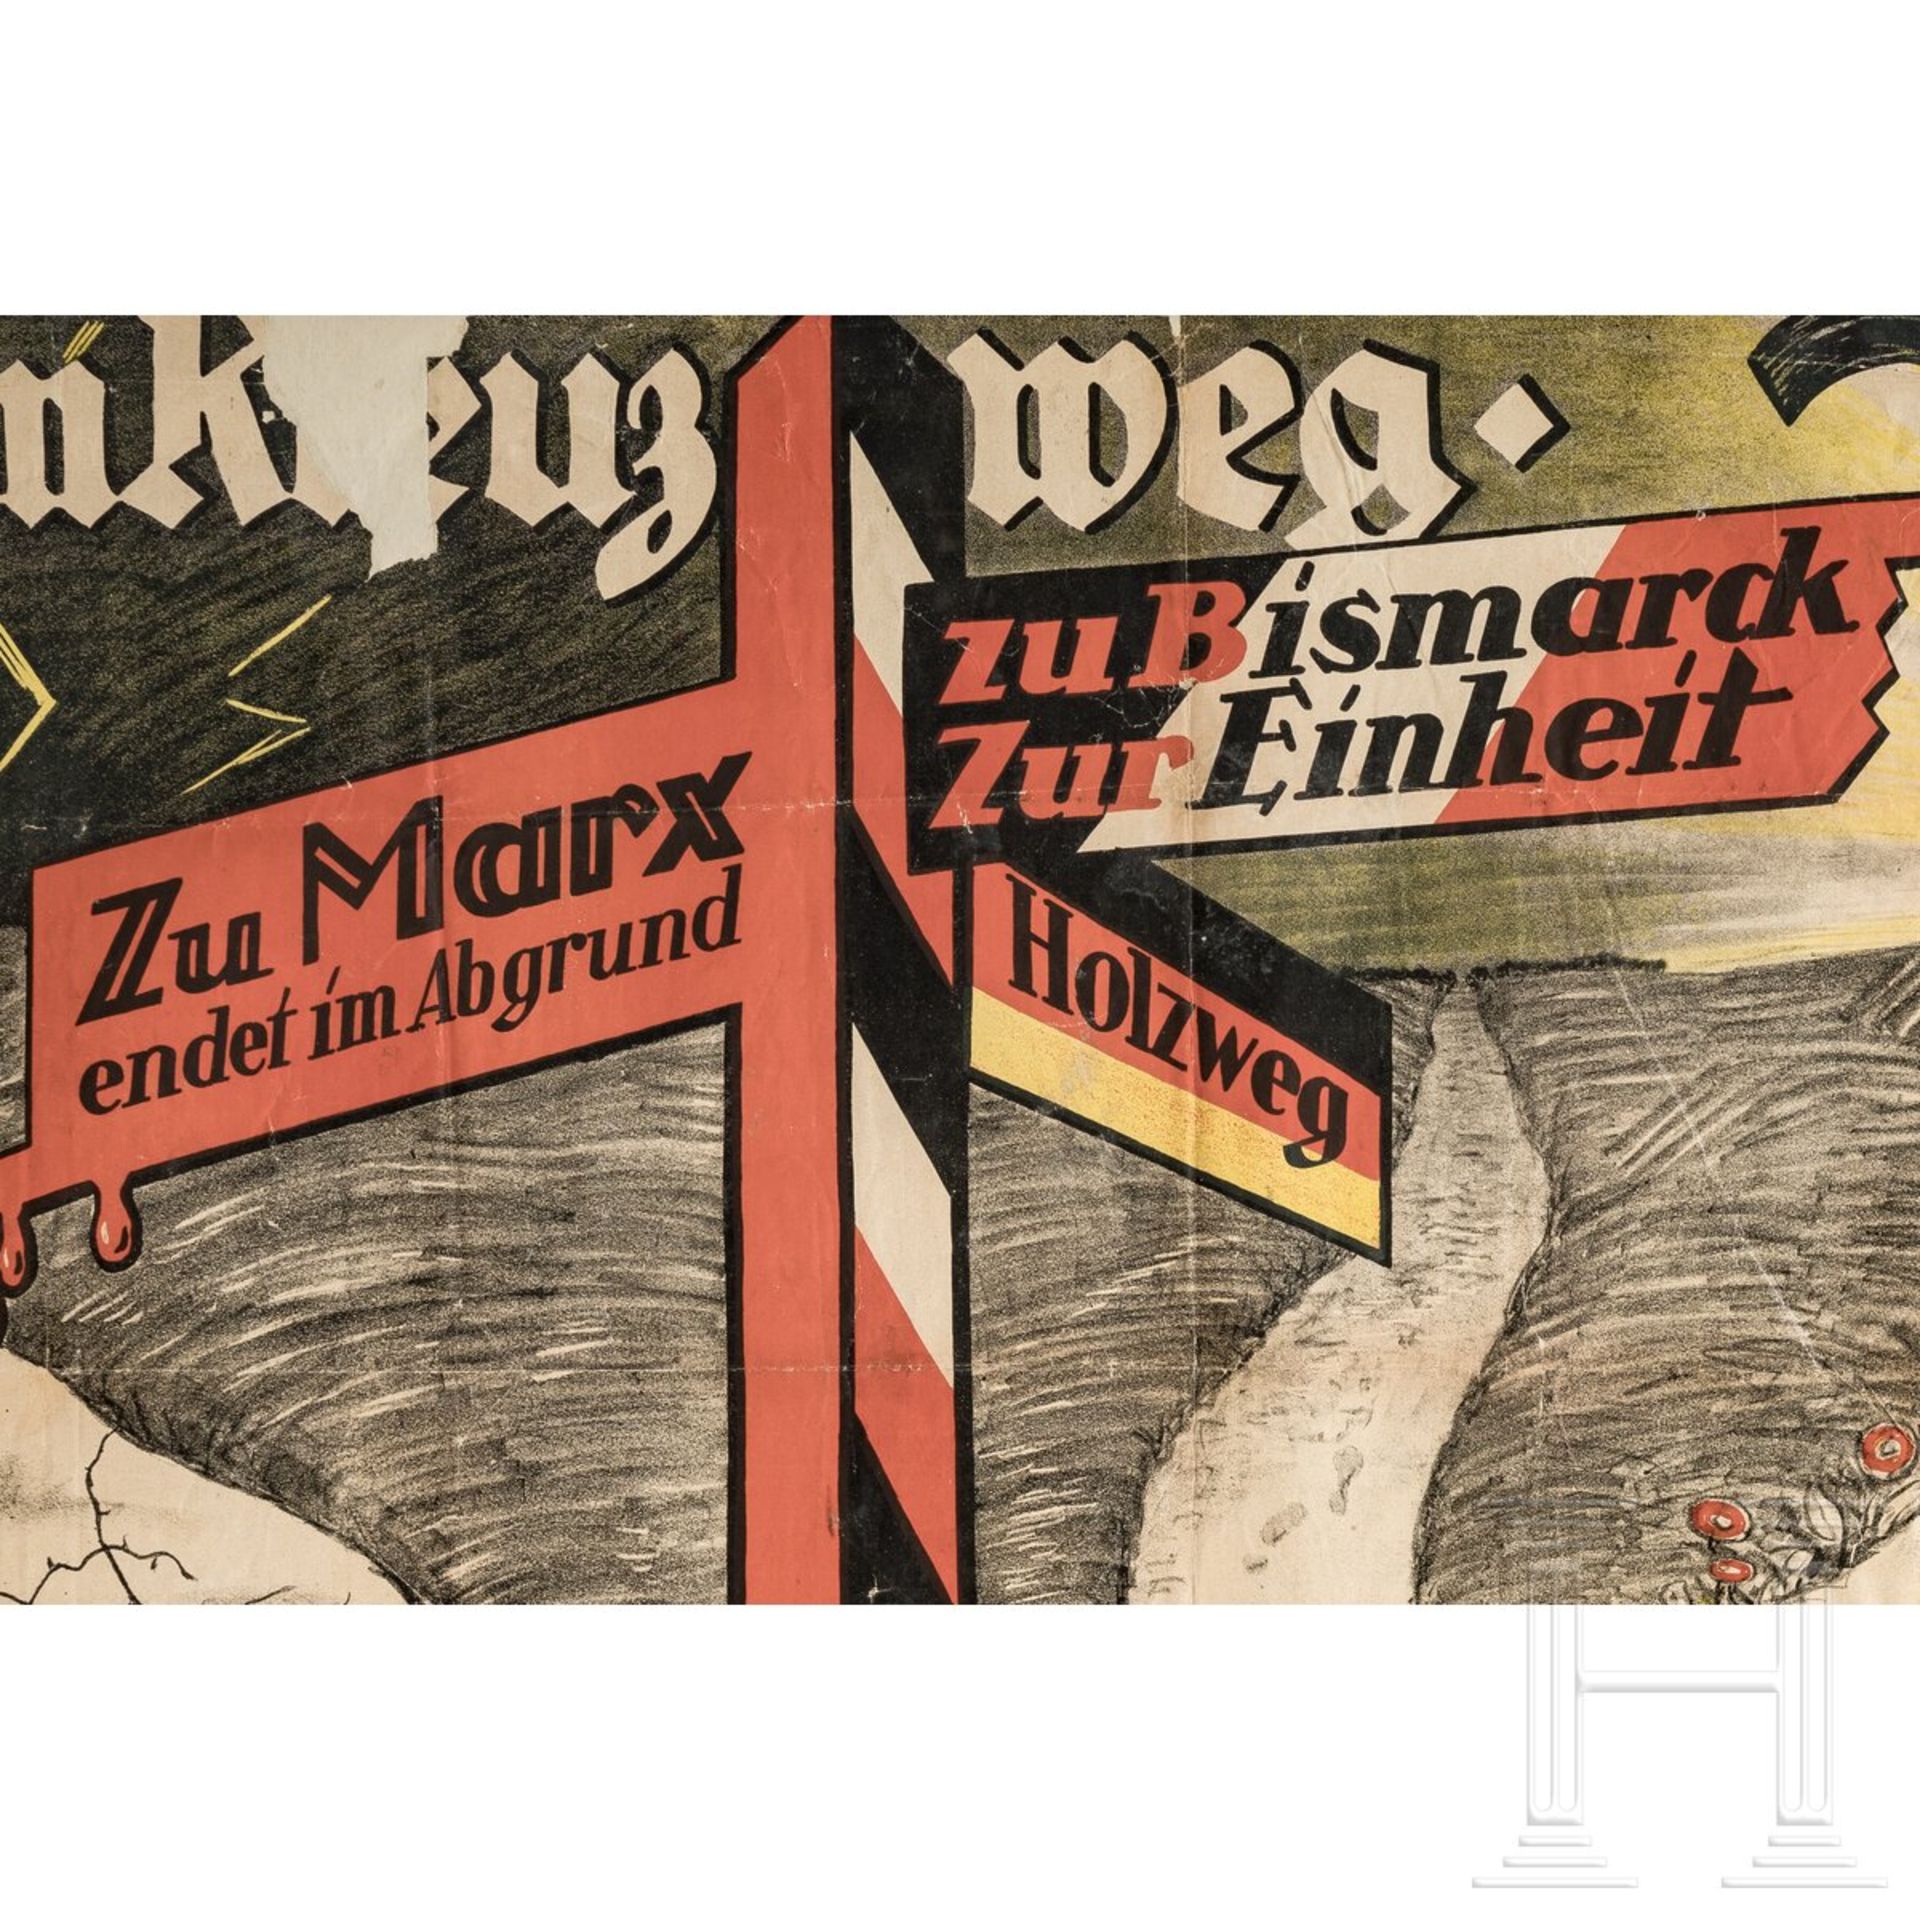 Wahlplakat "Am Kreuzweg - wähle den rechten Weg" der Deutschnationalen Partei, 1930 - Bild 5 aus 5